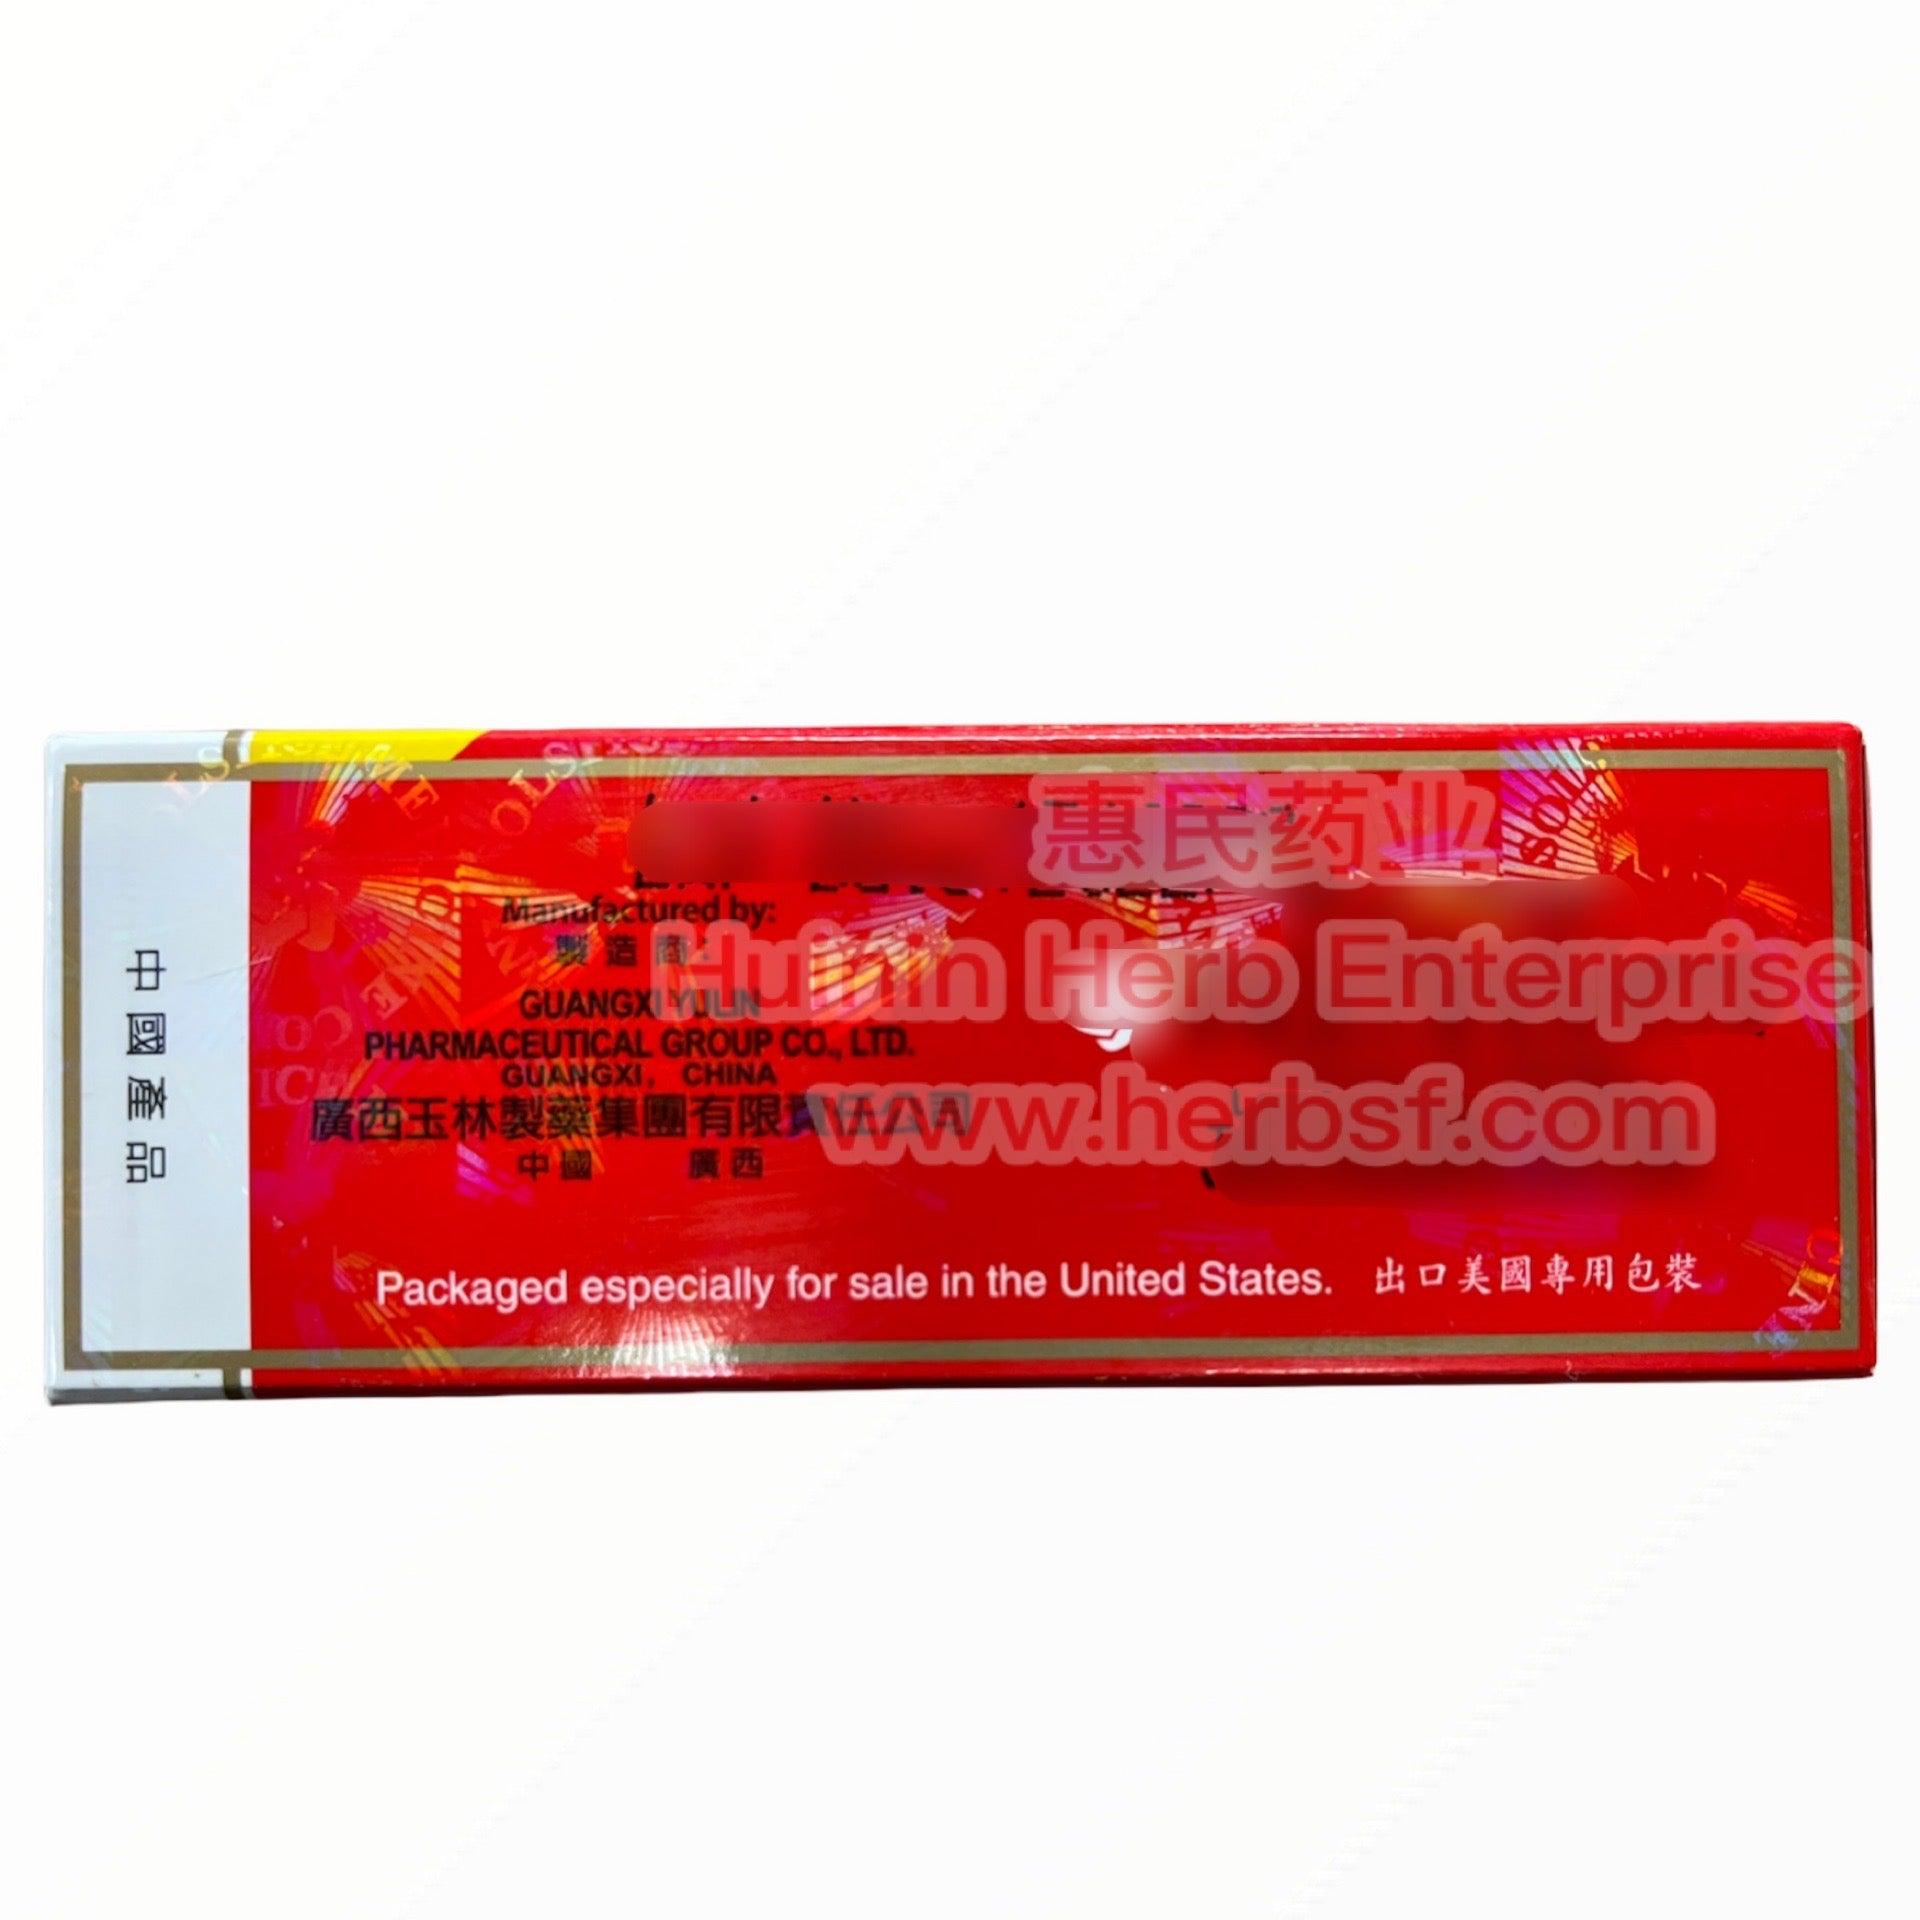 Zheng Gu Shui 100ml - Huimin Herb Online, LLC